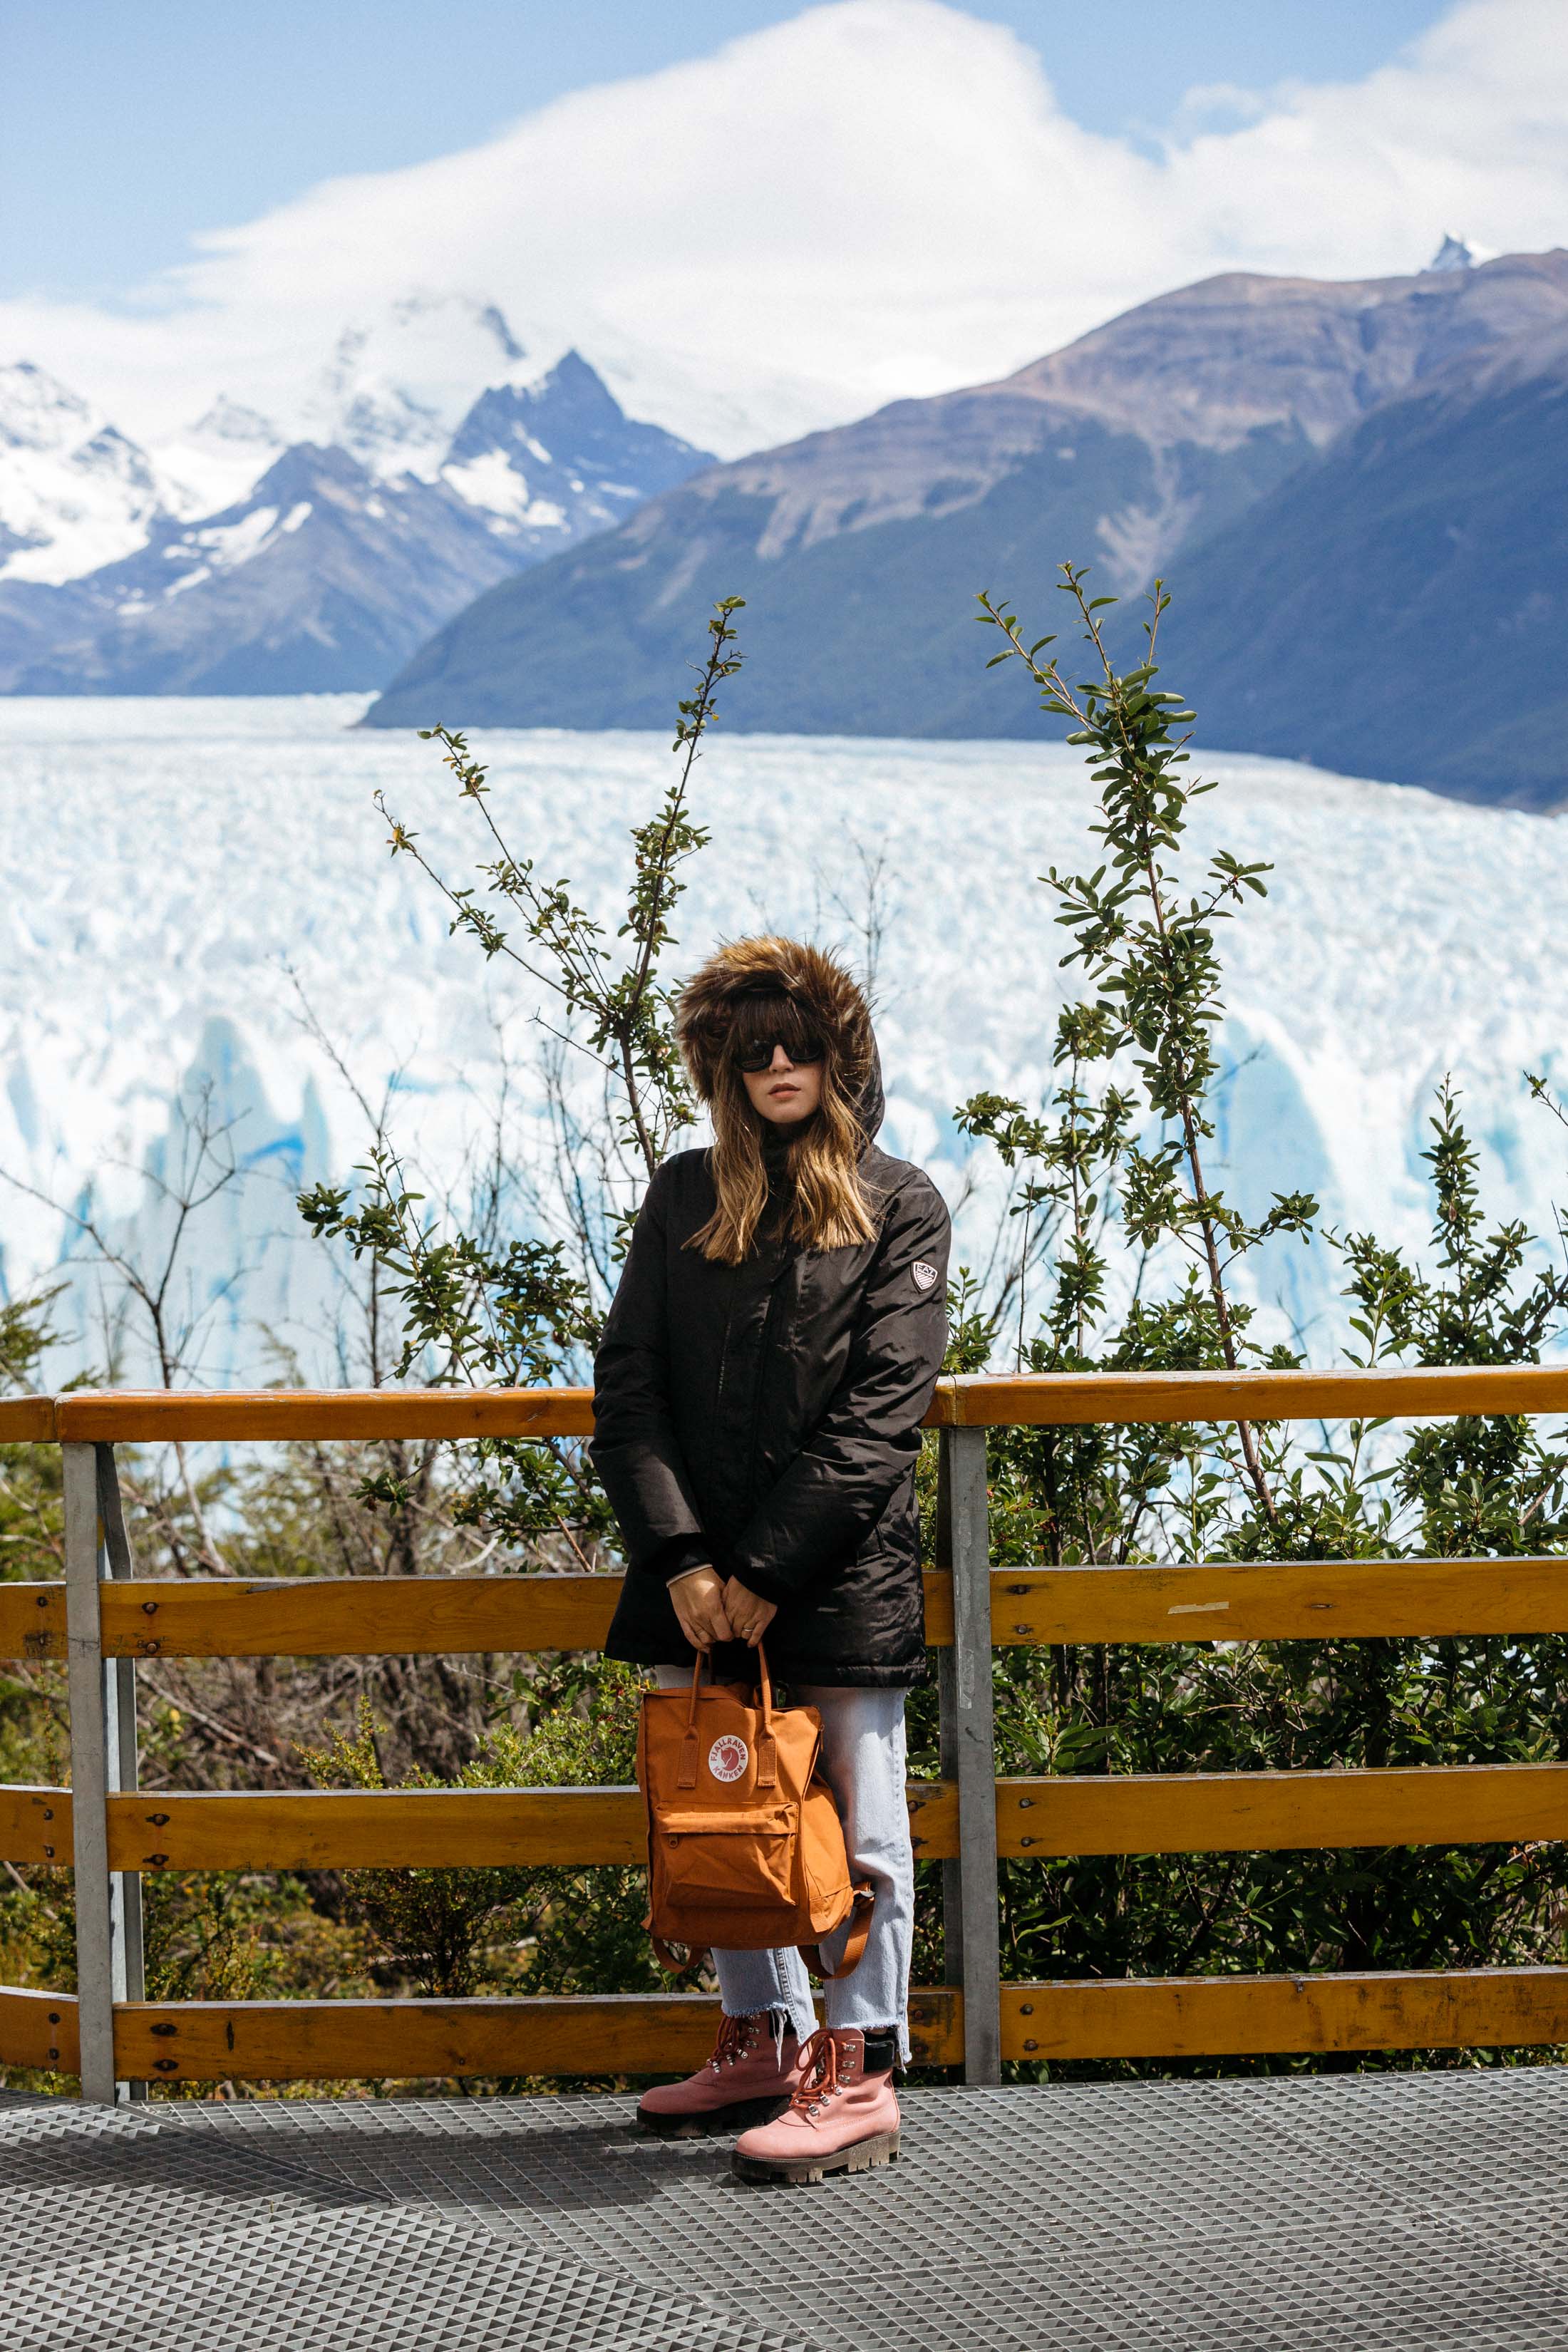 Maristella wears an Armani Parka and Fjallraven backpack at the Perito Moreno Glacier